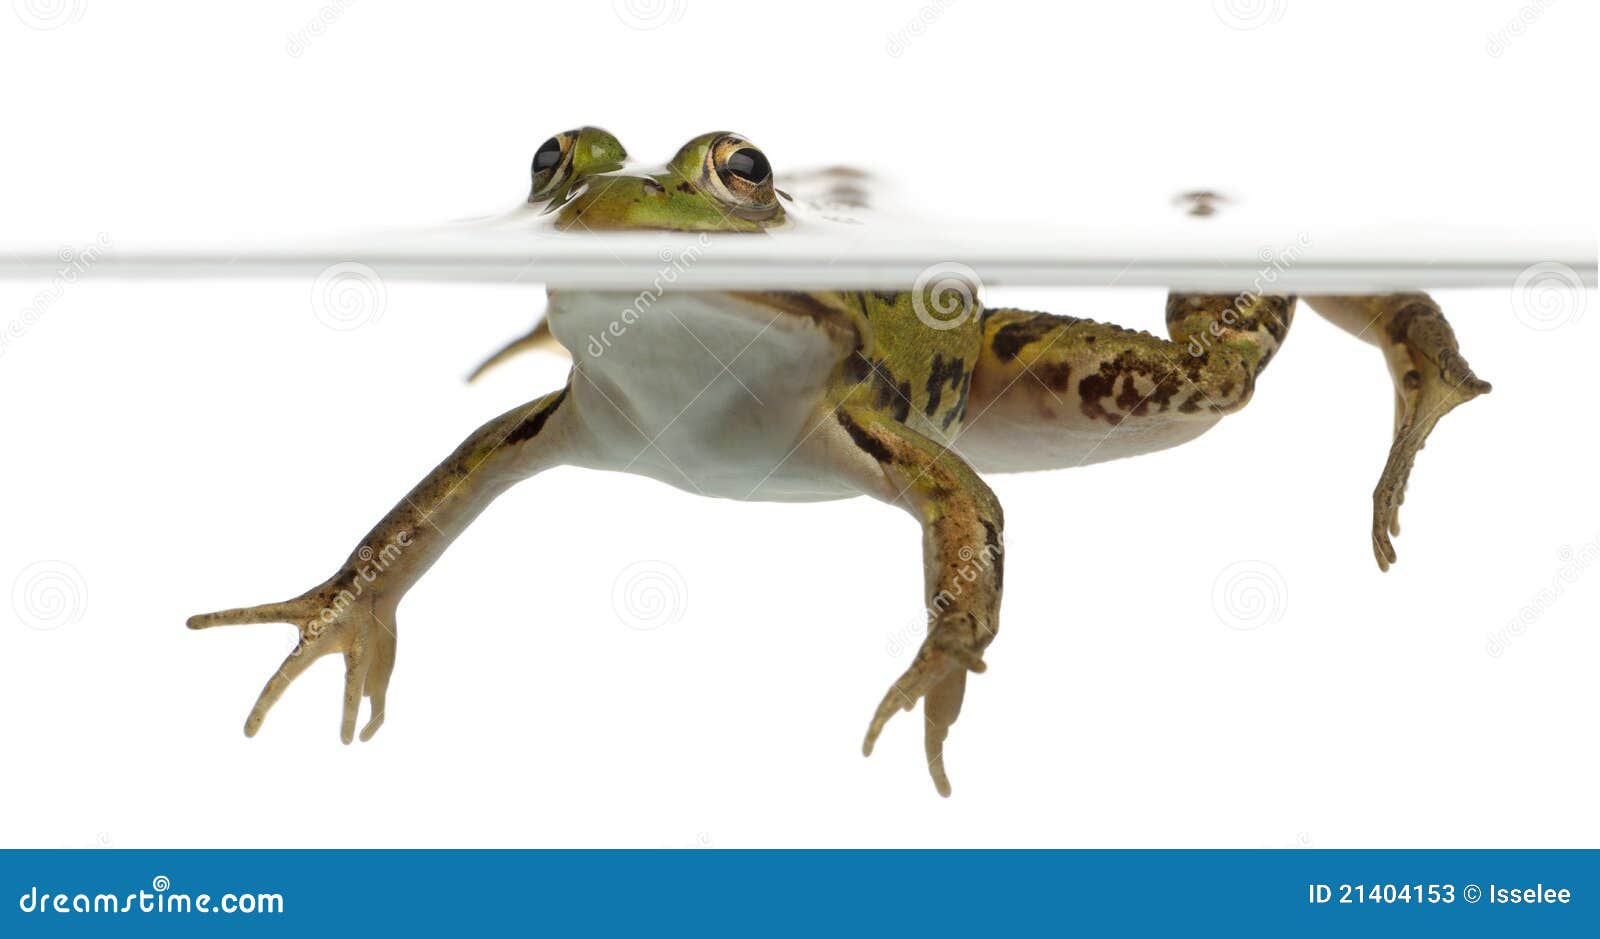 edible frog, rana esculenta, in water